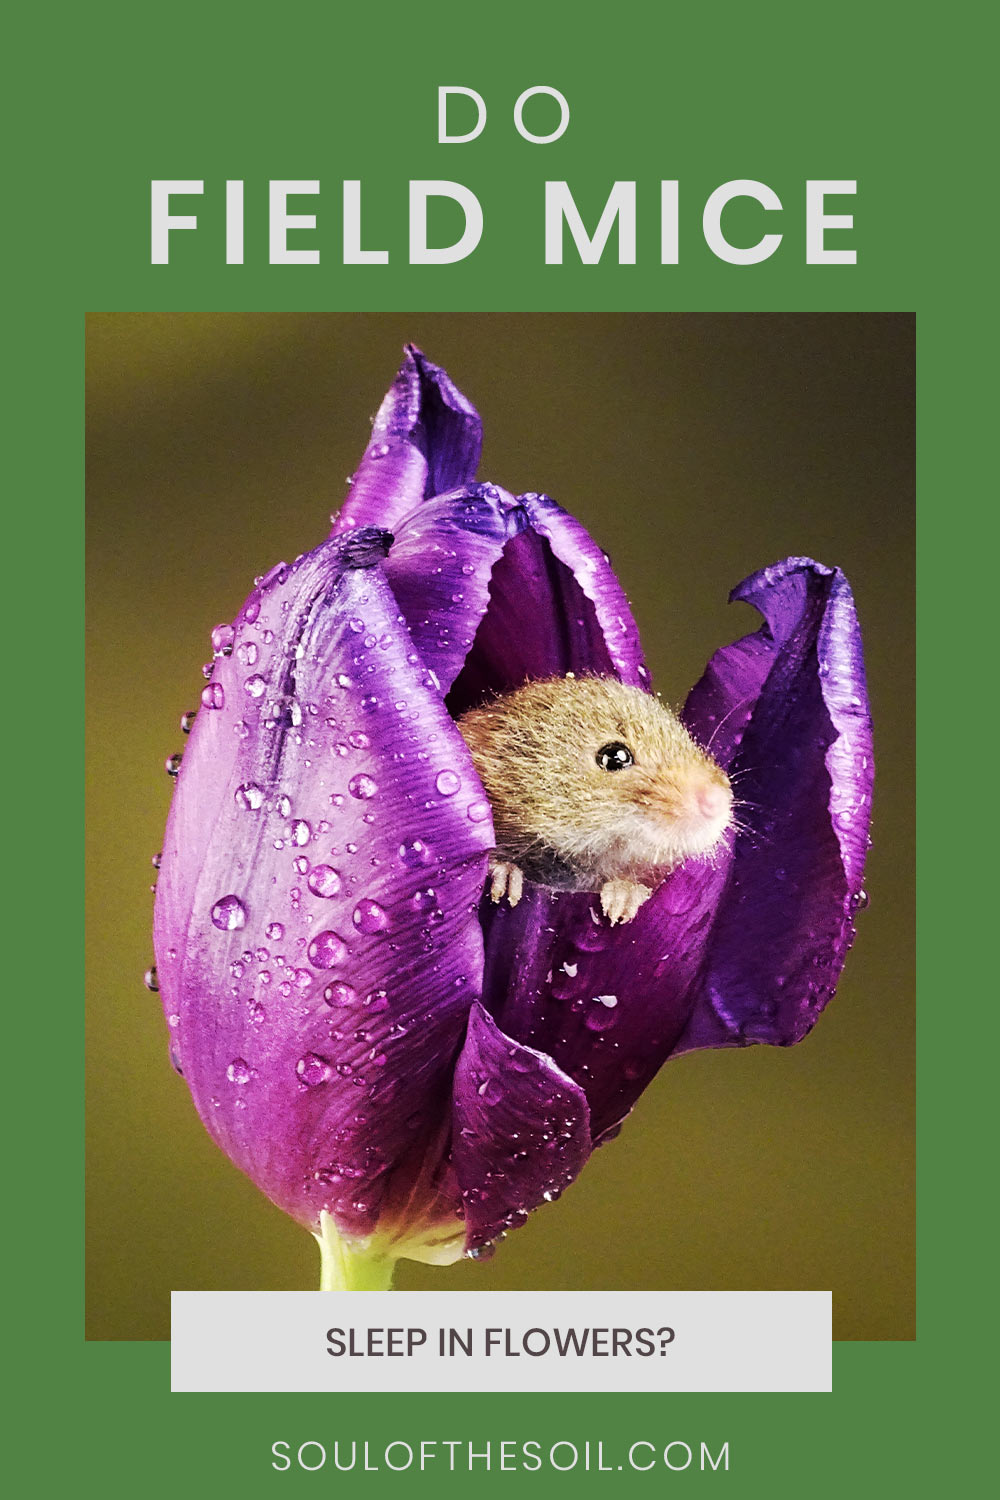 Field mice in a flower - Do they Sleep in Flowers?